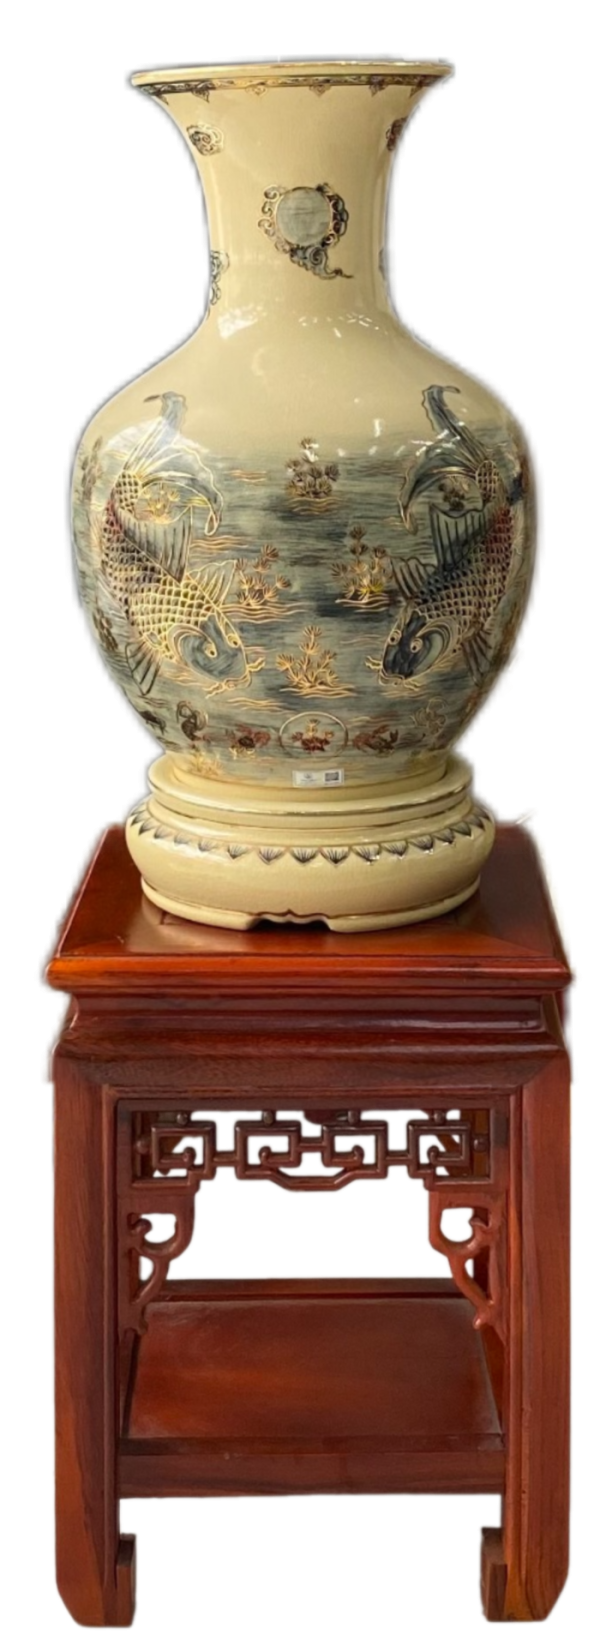 Bình Phú Quý gốm Chu Đậu, hoạ tiết "Lý Ngư Vọng Nguyệt" vẽ viền vàng 24K, cao 50cm bao gồm kỷ